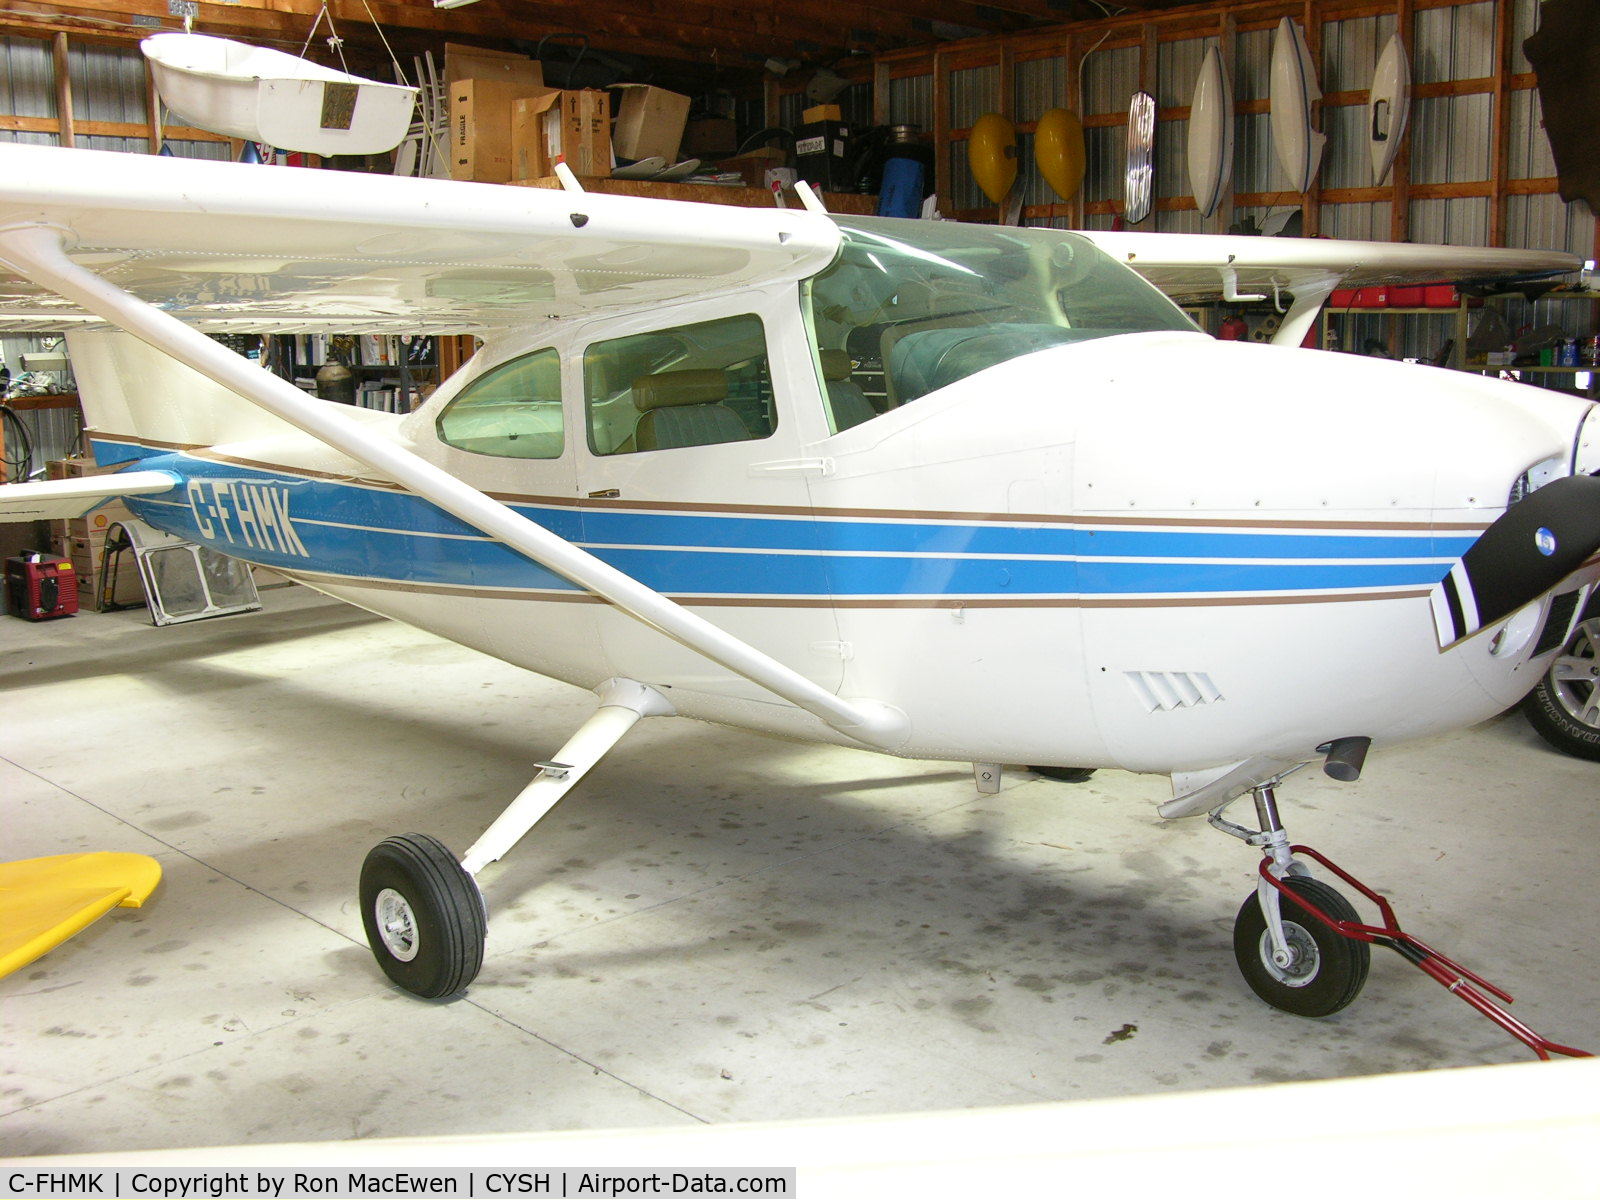 C-FHMK, 1974 Cessna 182P Skylane C/N 18262732, at the hangar